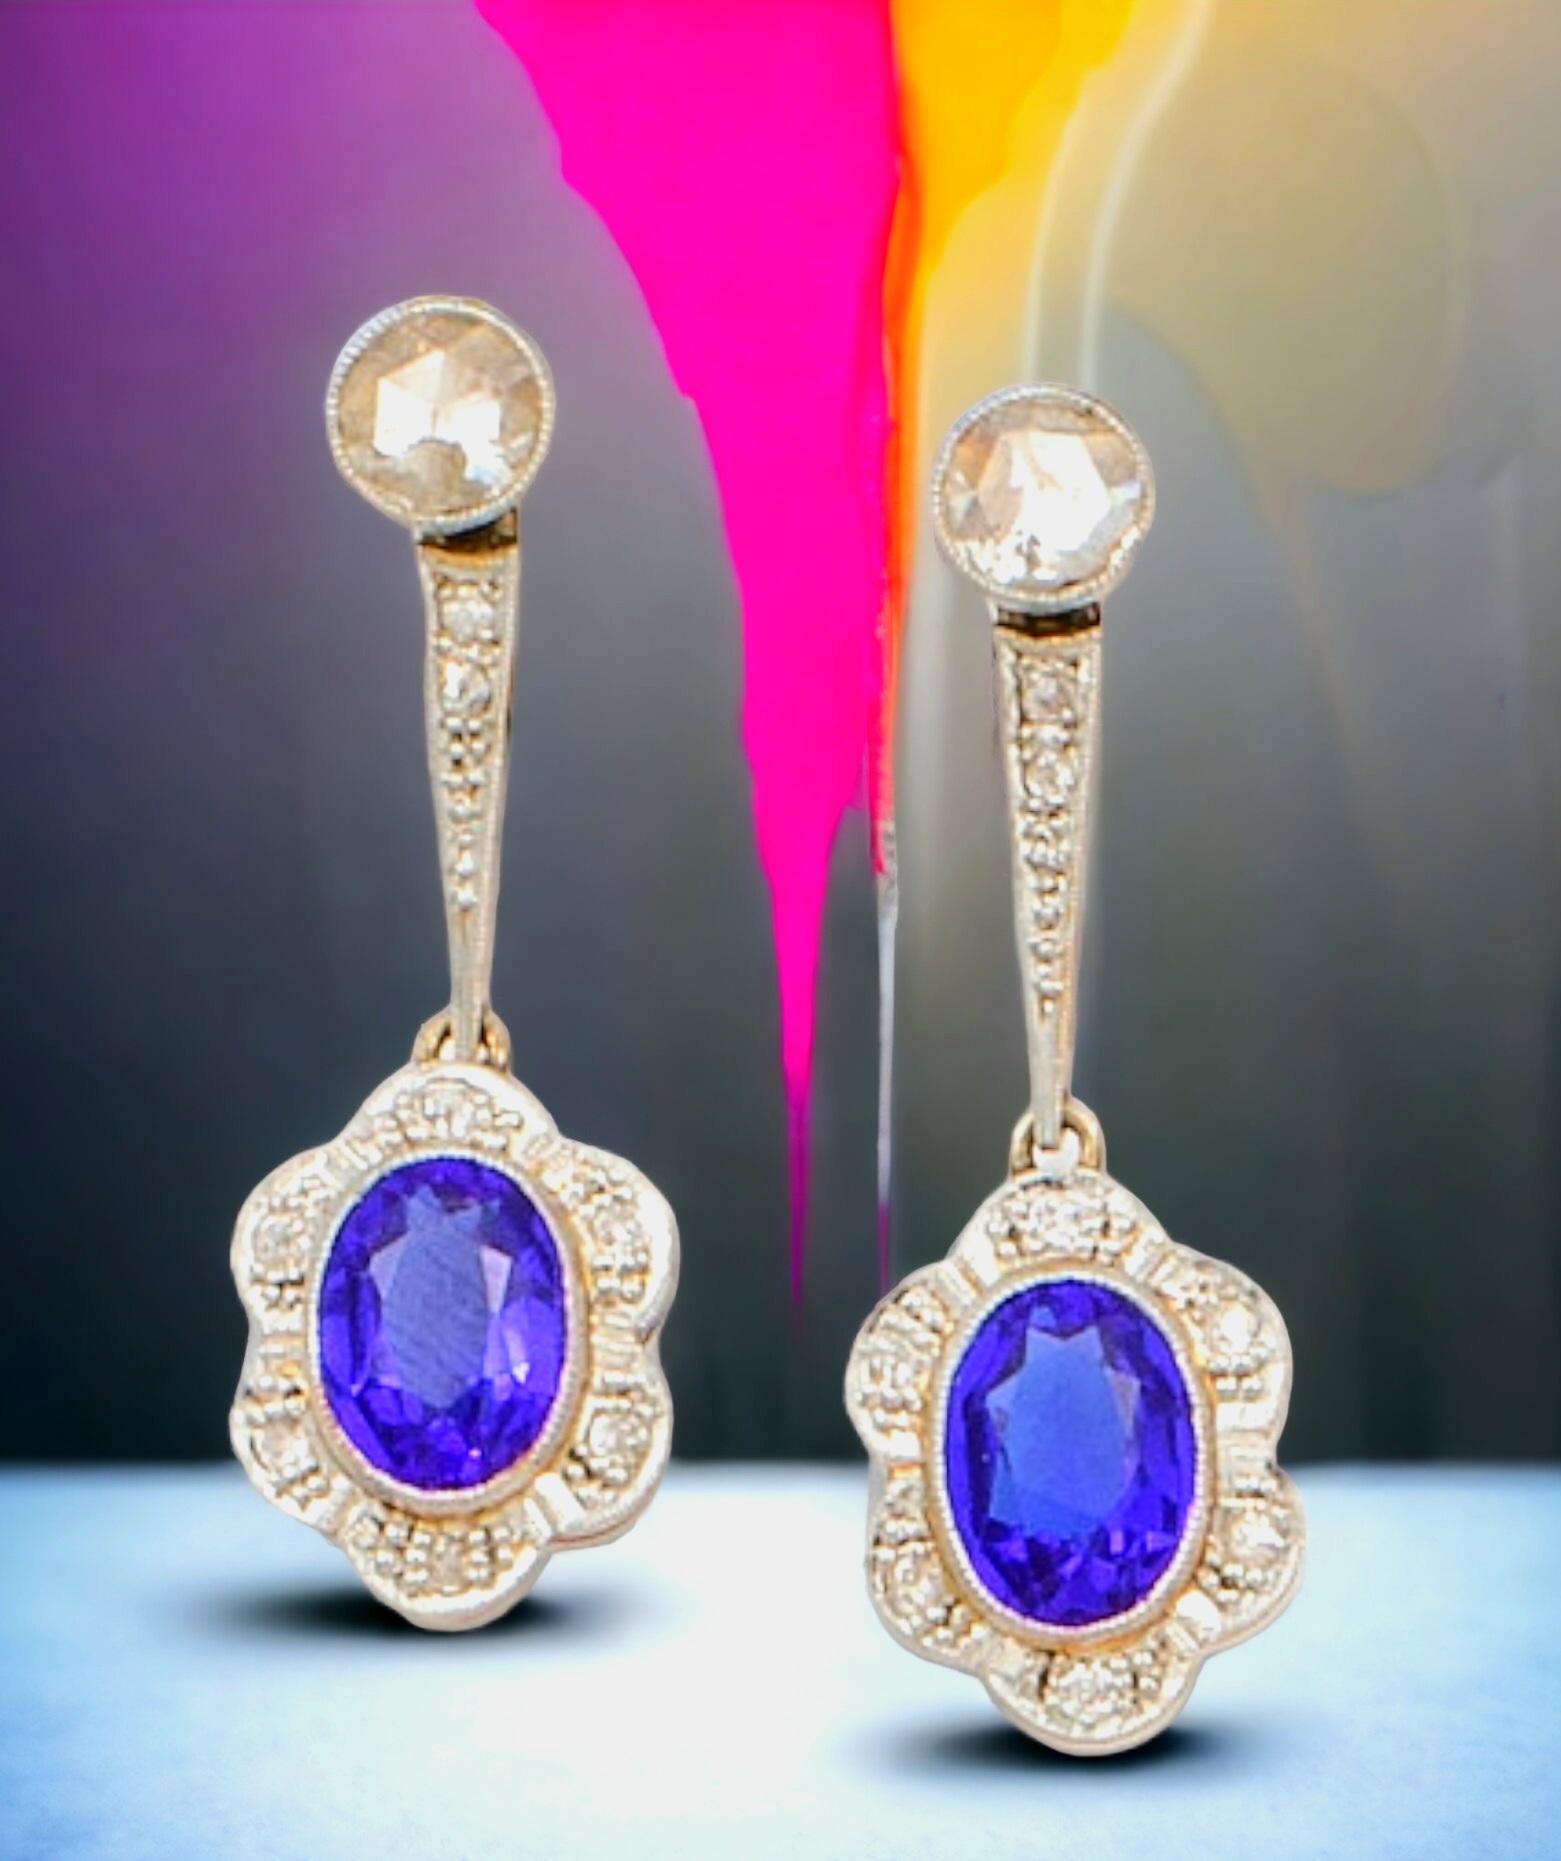 Art-Deco Synthetischer Blauer Saphir und Diamant  Tropfen-Ohrringe.
Jeder Ohrring ist mit einem prächtigen kobaltblauen Mittelstein versehen, der in einem ständigen Wechsel von hellen und dunklen Tönen erstrahlt.
Diese prächtigen  Die